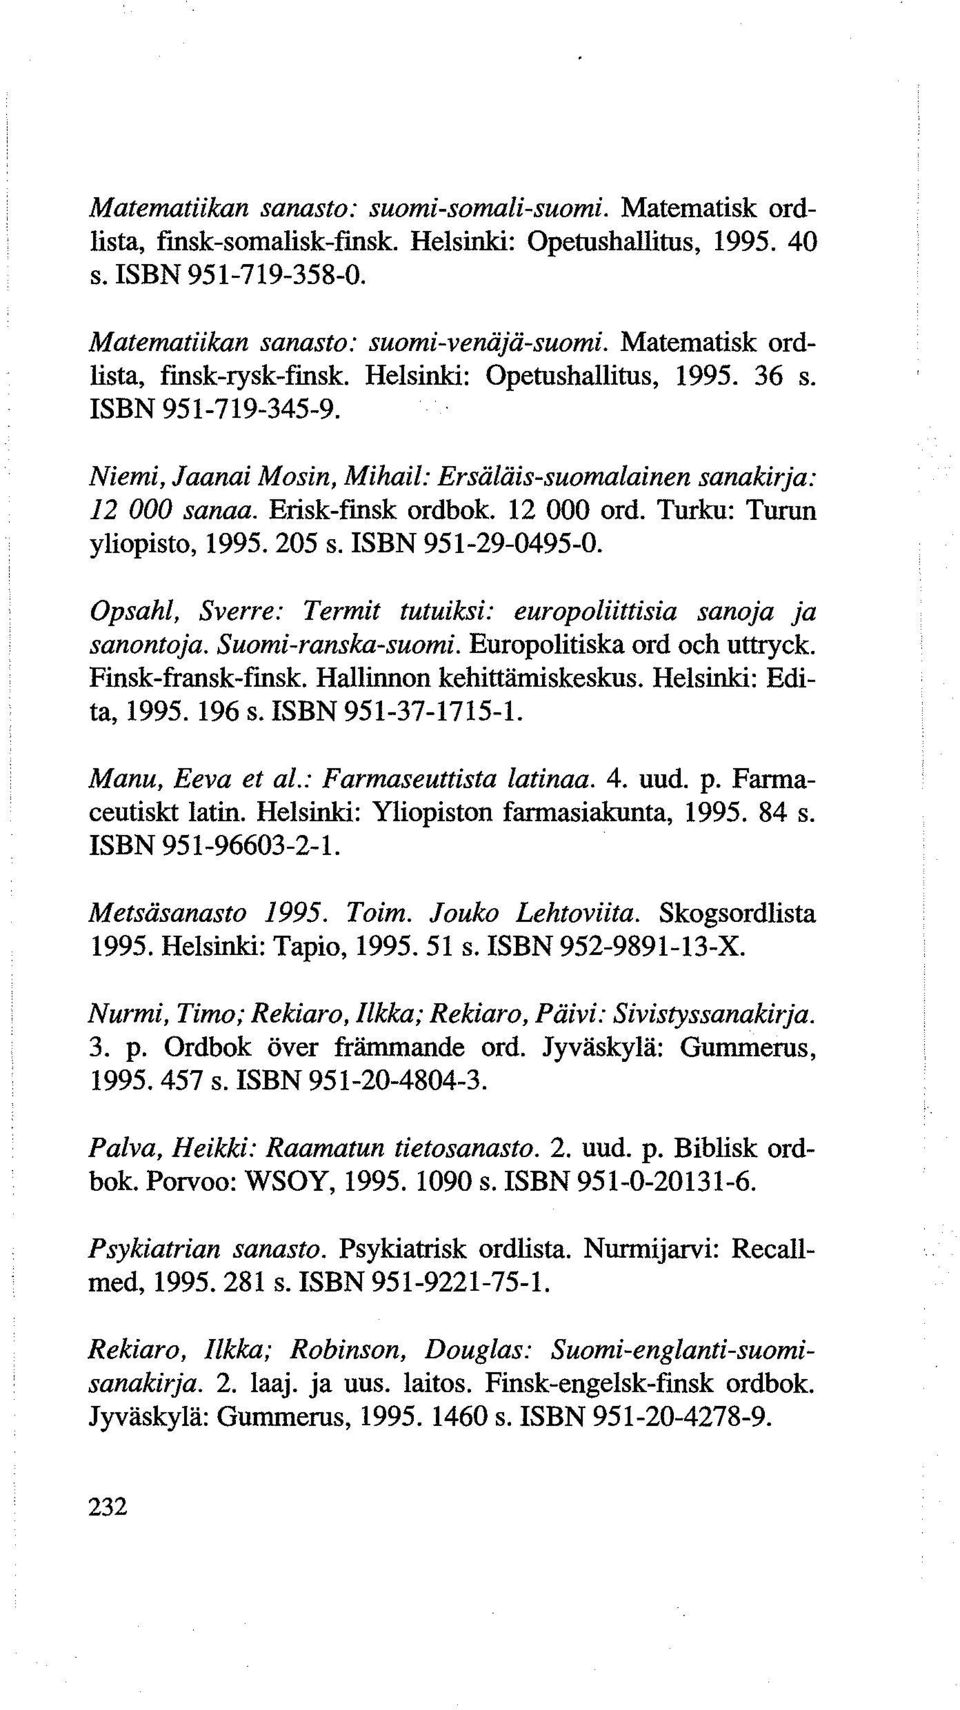 12 000 ord. Turku: Turun yliopisto, 1995. 205 s. ISBN 951-29-0495-0. Opsahl, Sverre: Termit tutuiksi: europoliittisia sanoja ja sanontoja. Suomi-ranska-suomi. Europolitiska ord och uttryck.